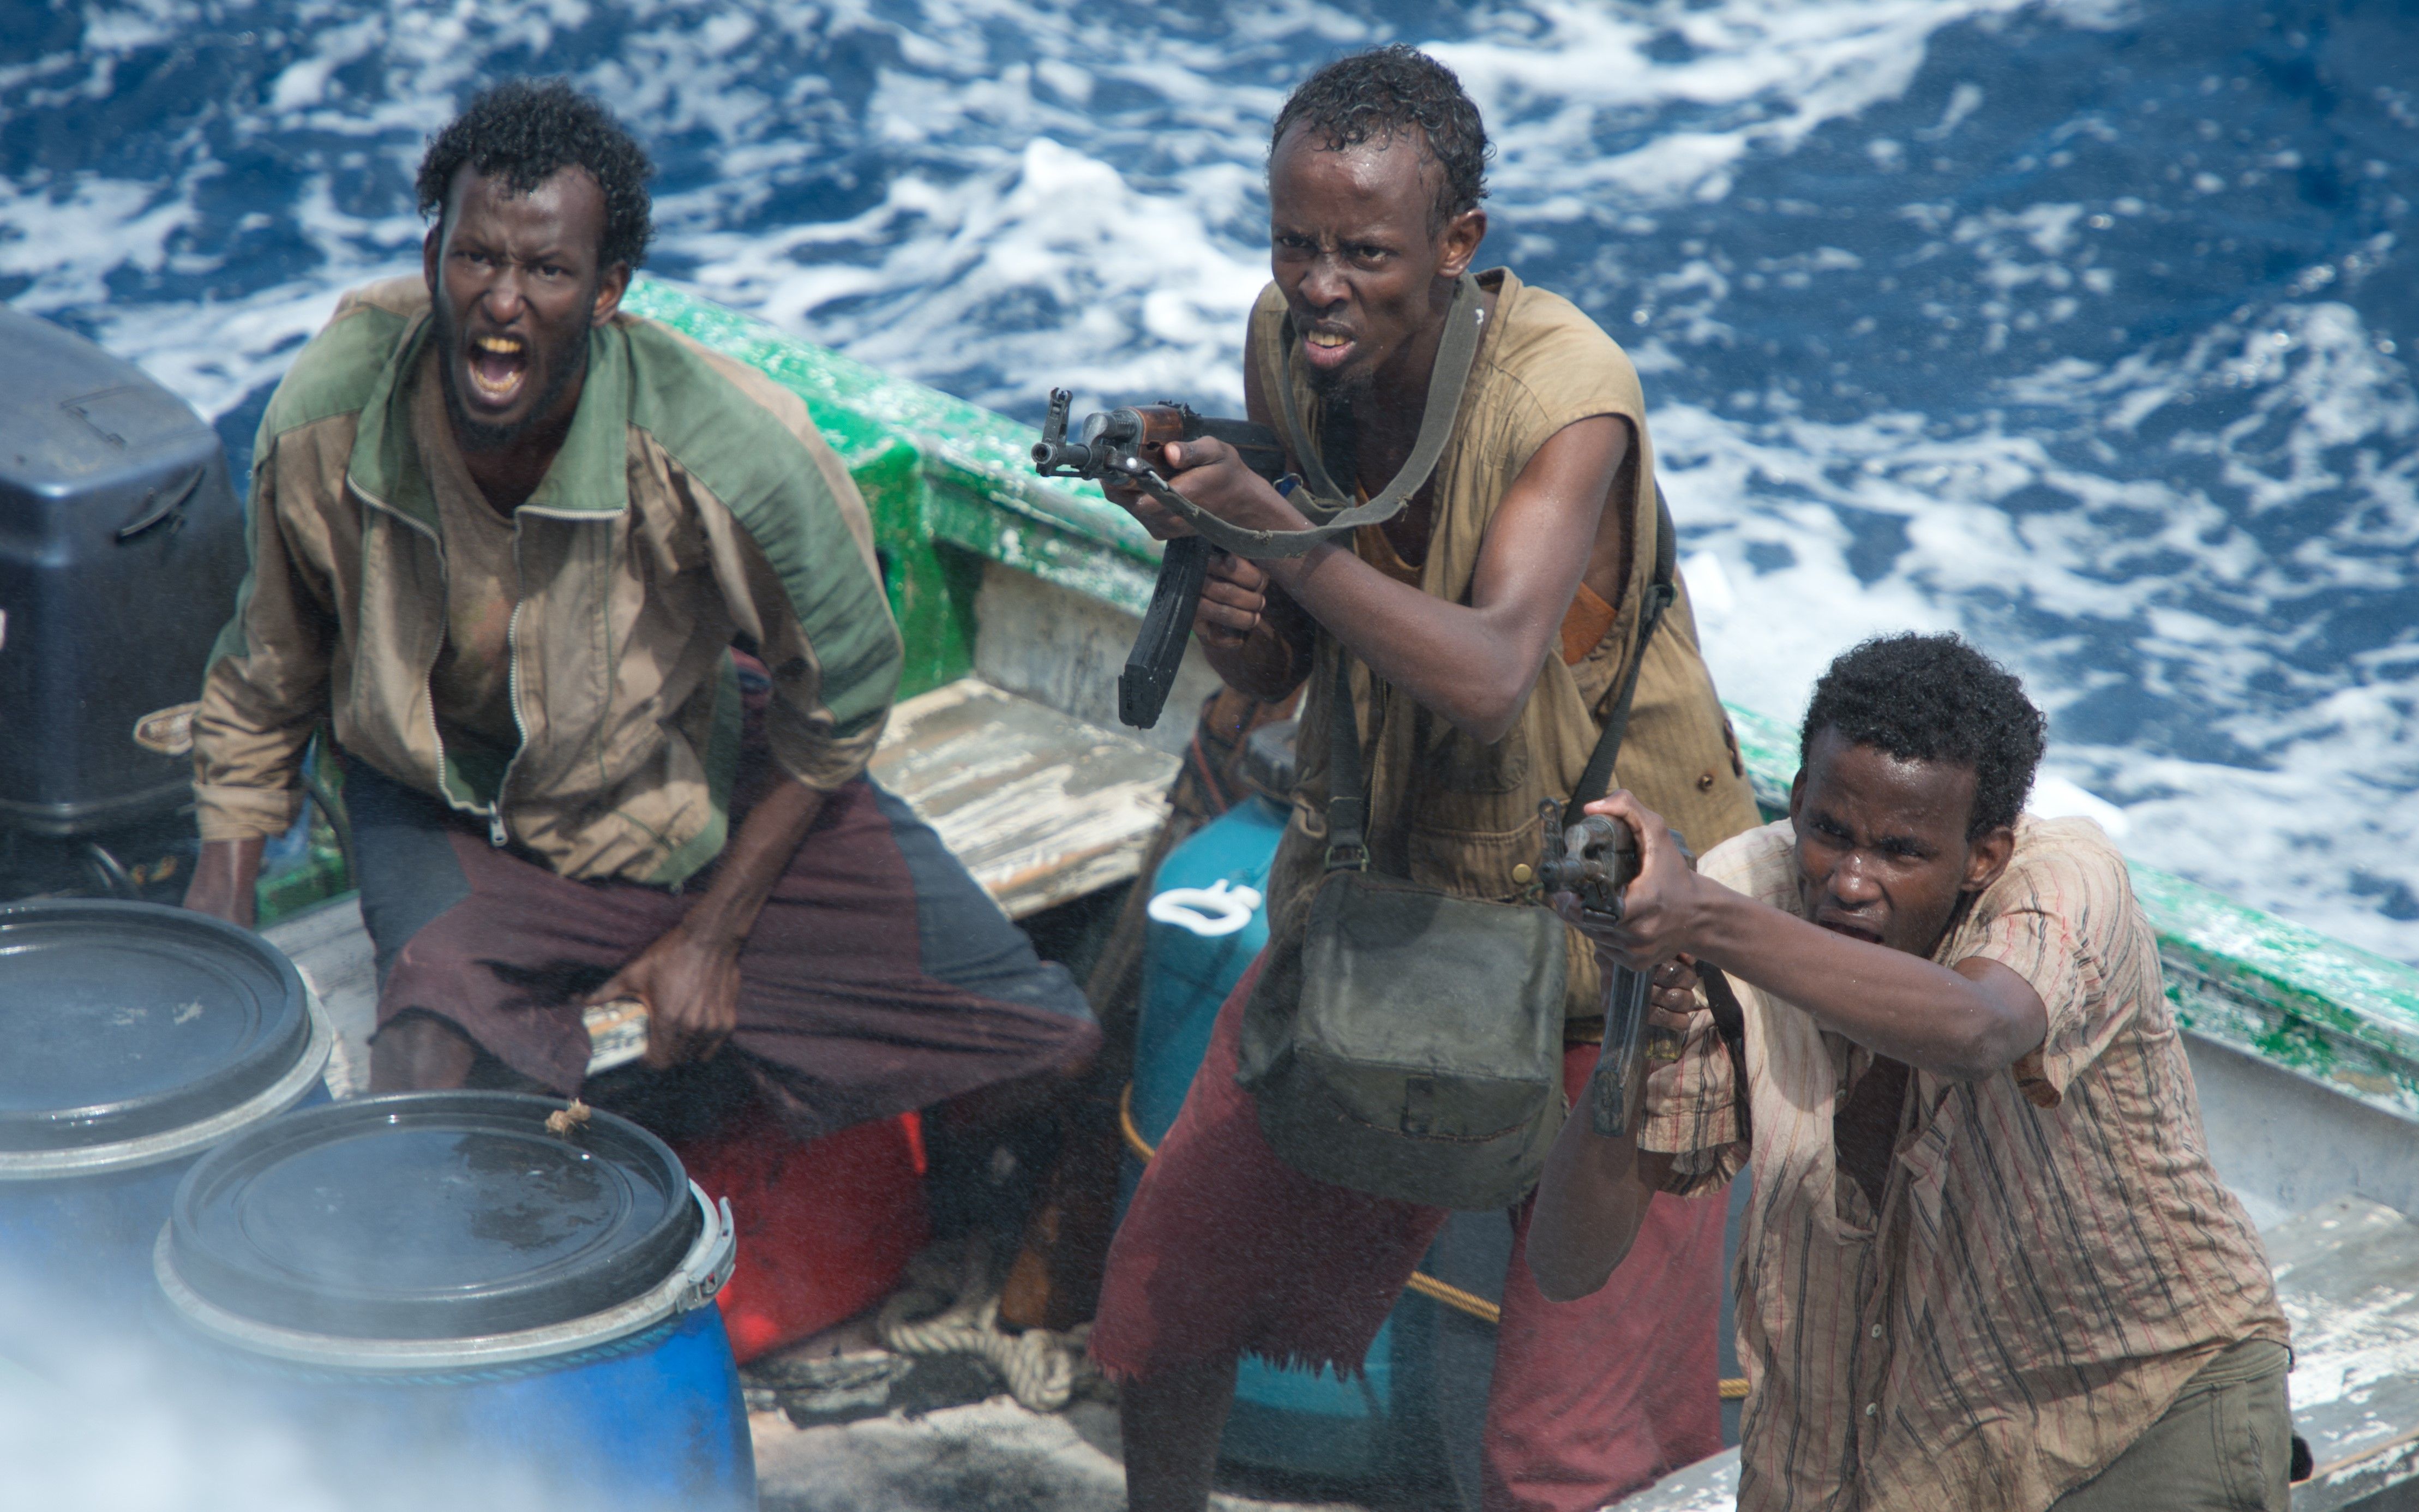 索马里海盗劫持大货轮,张口就要1000万赎金,可惜军队不是软柿子